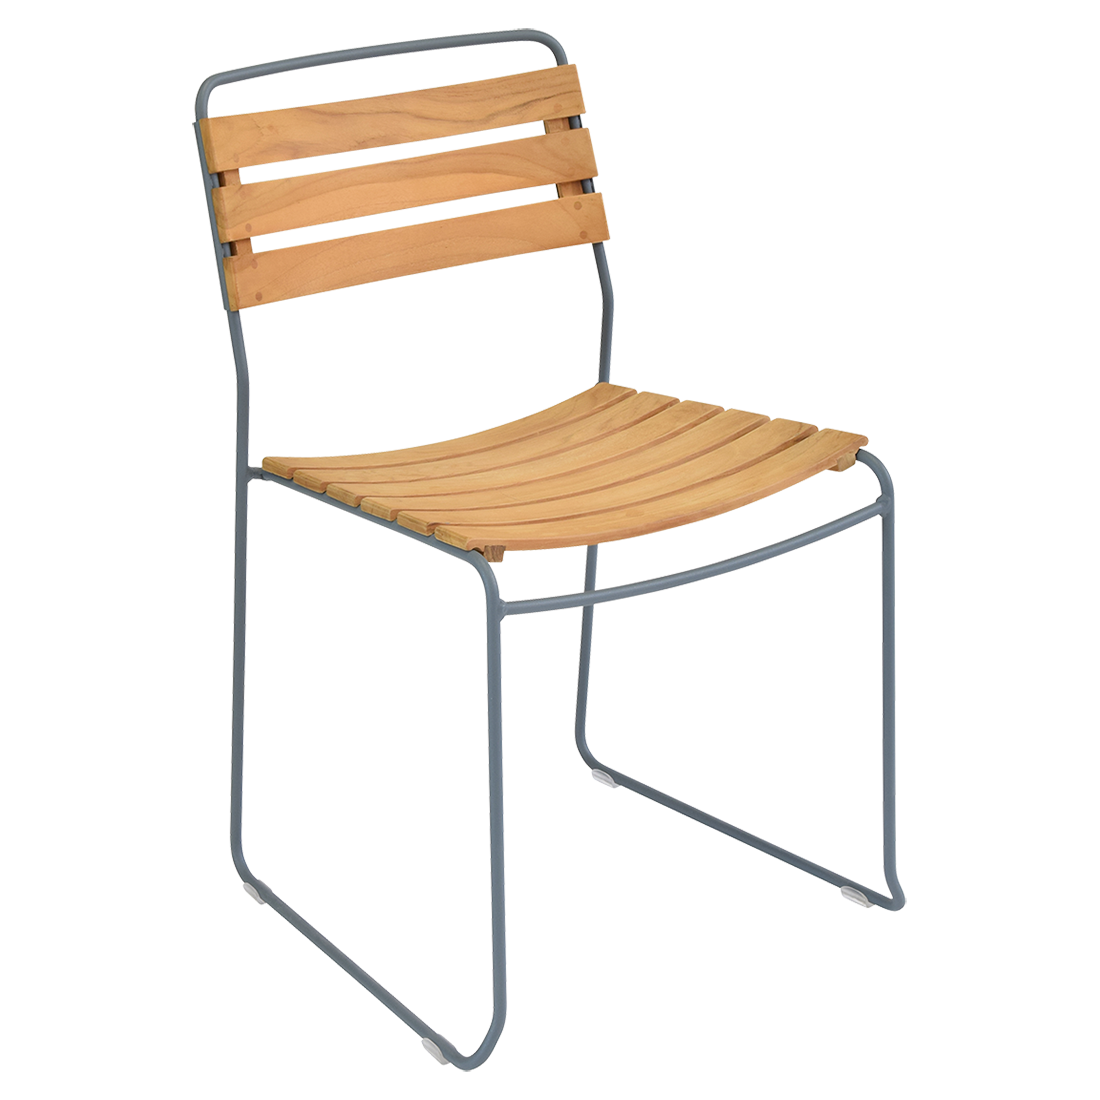 chaise surprising, chaise fermob, chaise bois et metal, chaise de jardin, chaise design, chaise bois et gris, guggenbichler